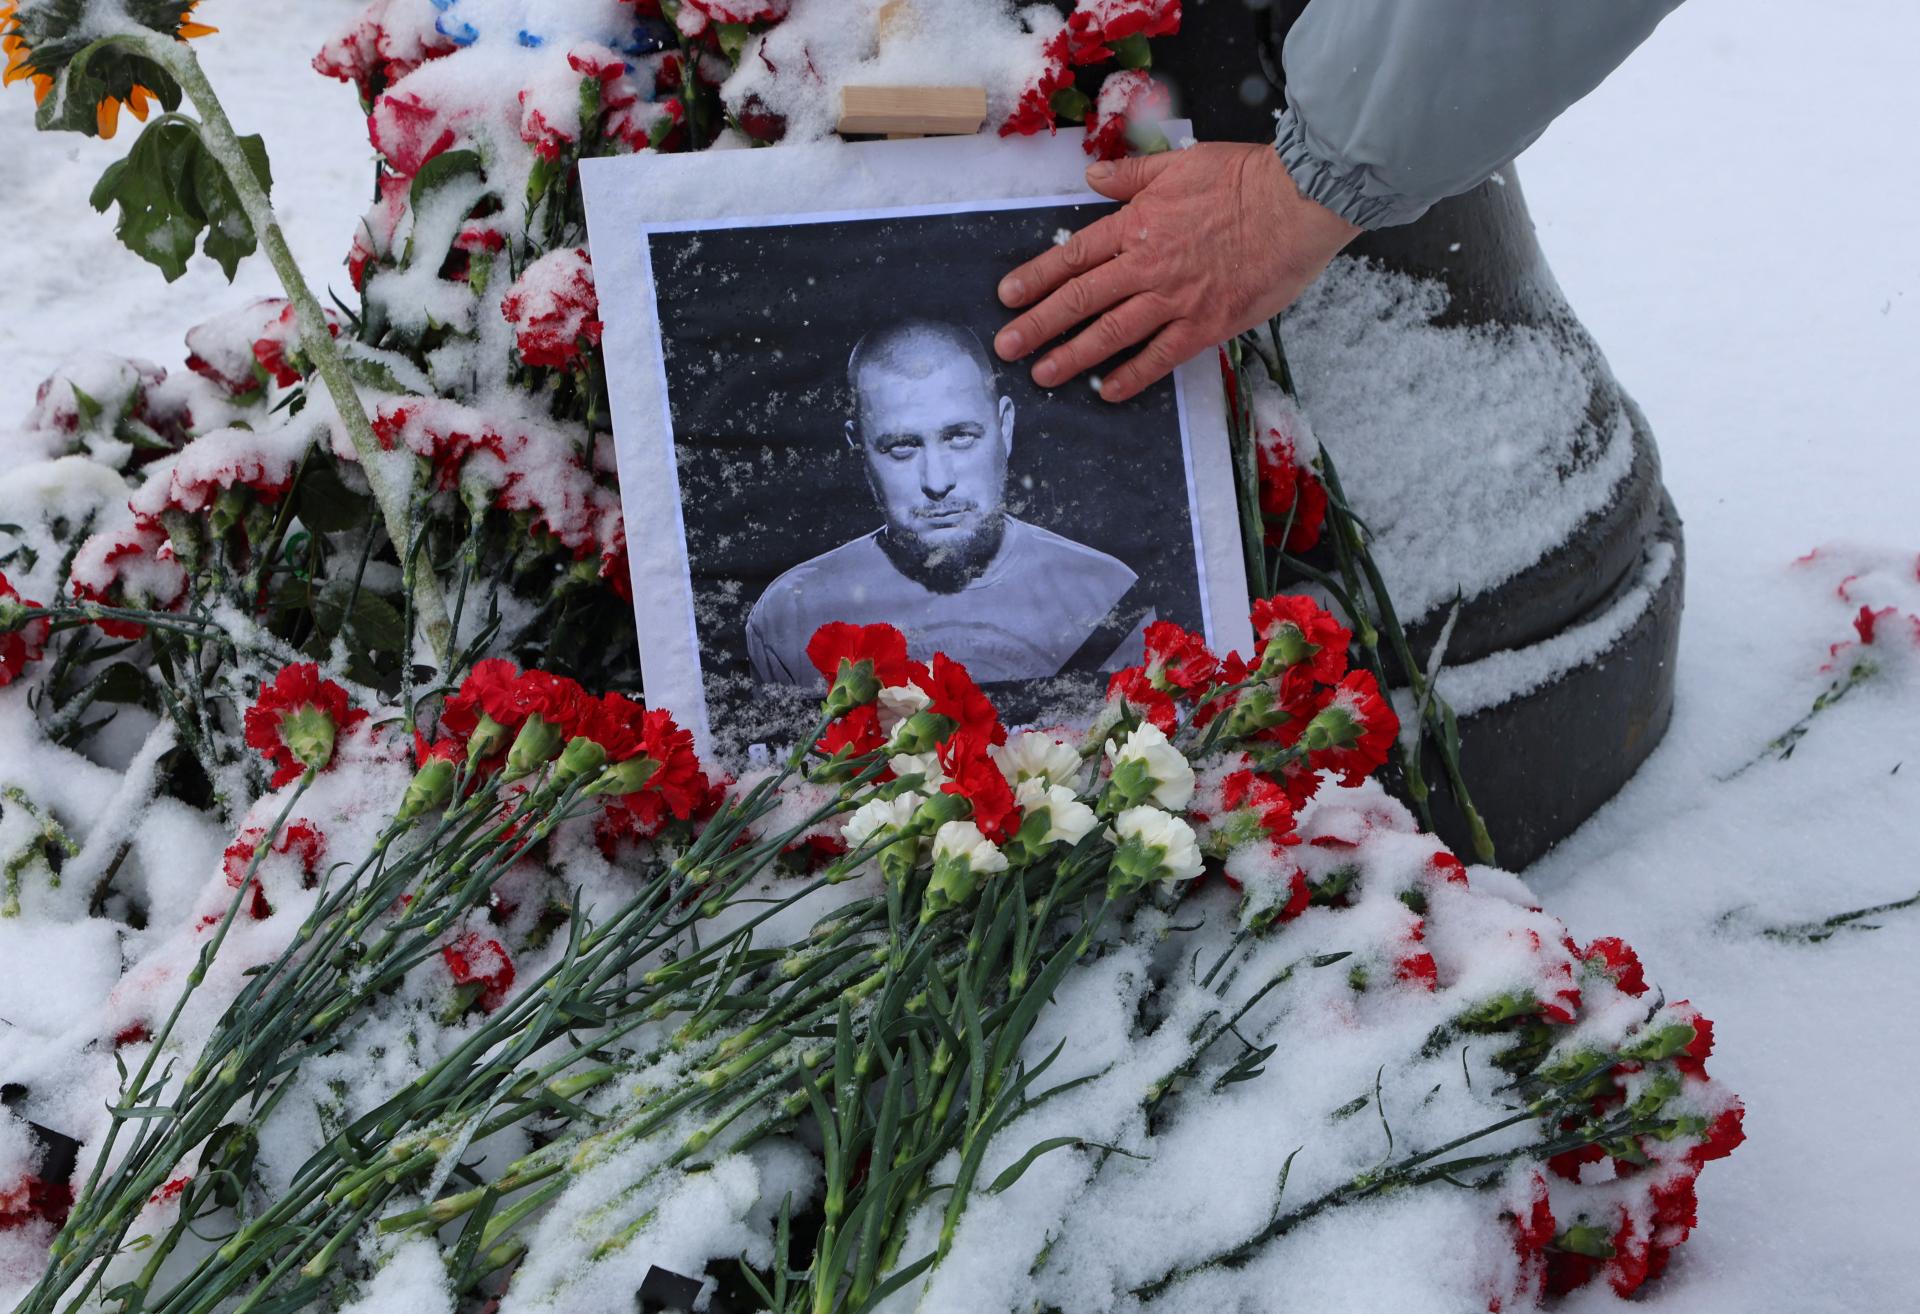 Blogera zabili Navaľného kolegovia sadrovou soškou, tvrdí Rusko. Zadržali ženu